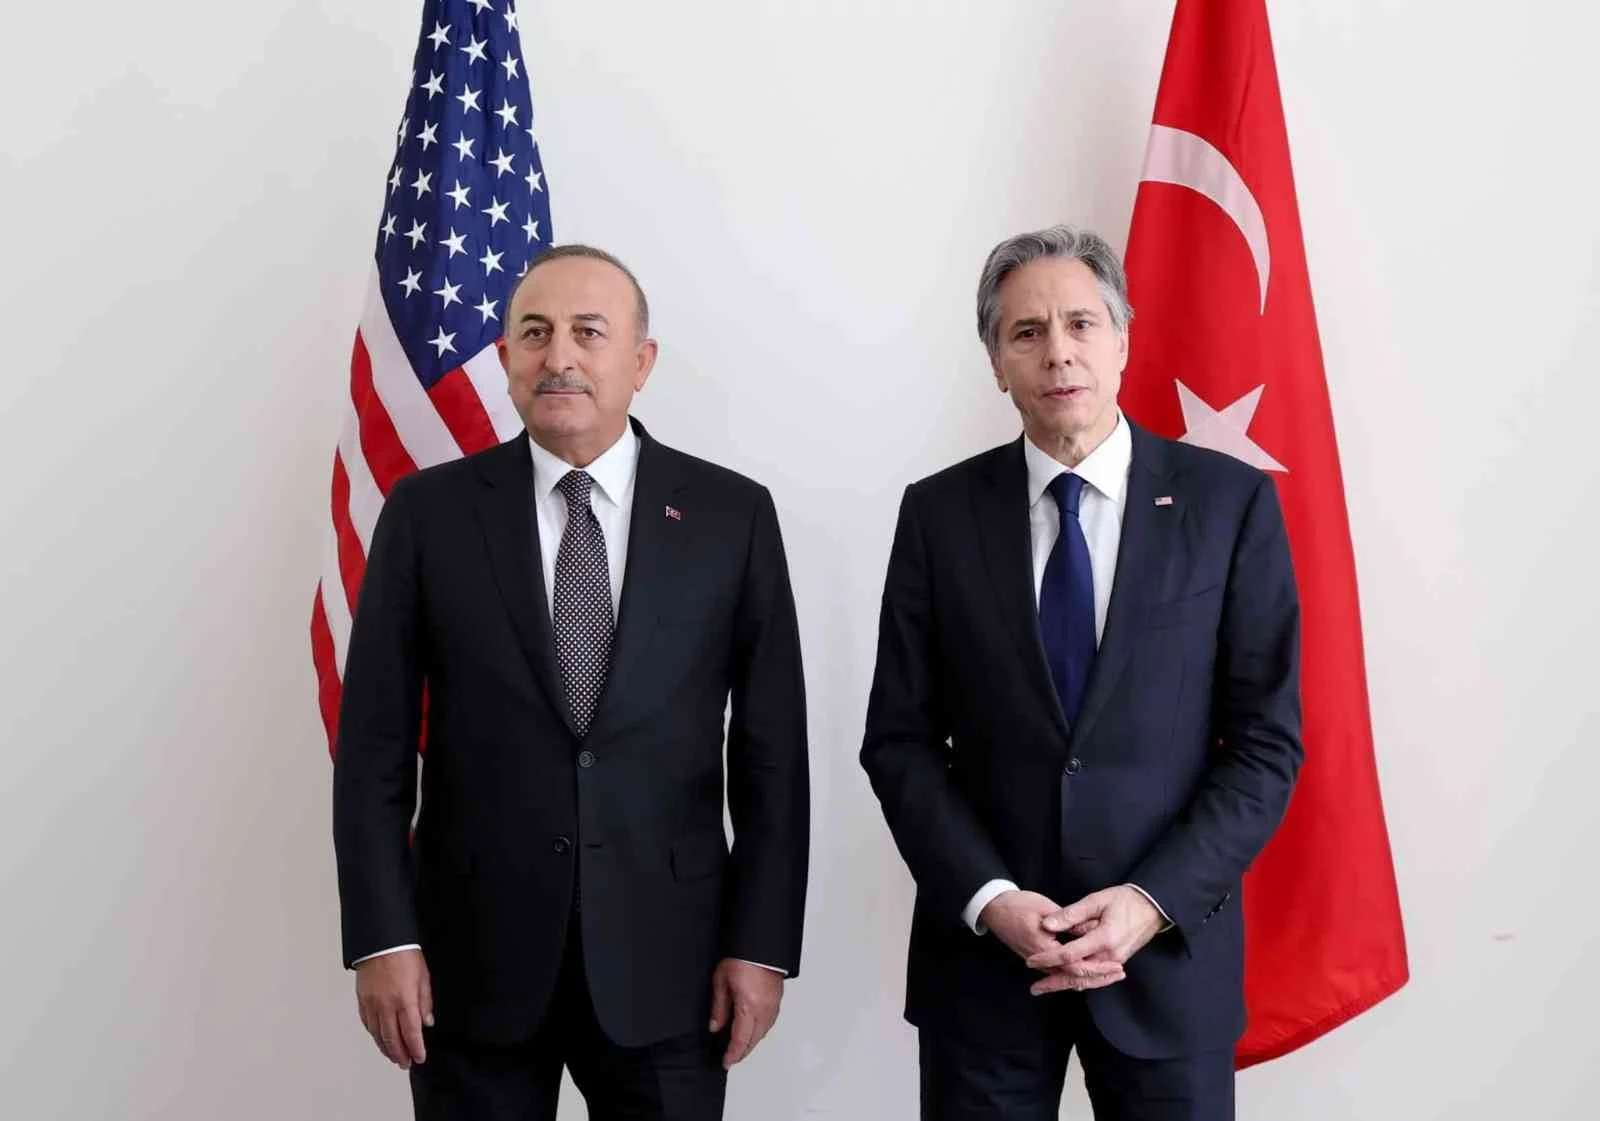 ABD Dışişleri Bakanı Blinken: “ABD, Türkiye ve tüm müttefiklerimizin Ukraynayı desteklemekte gösterdiği dayanışma için minnettarız